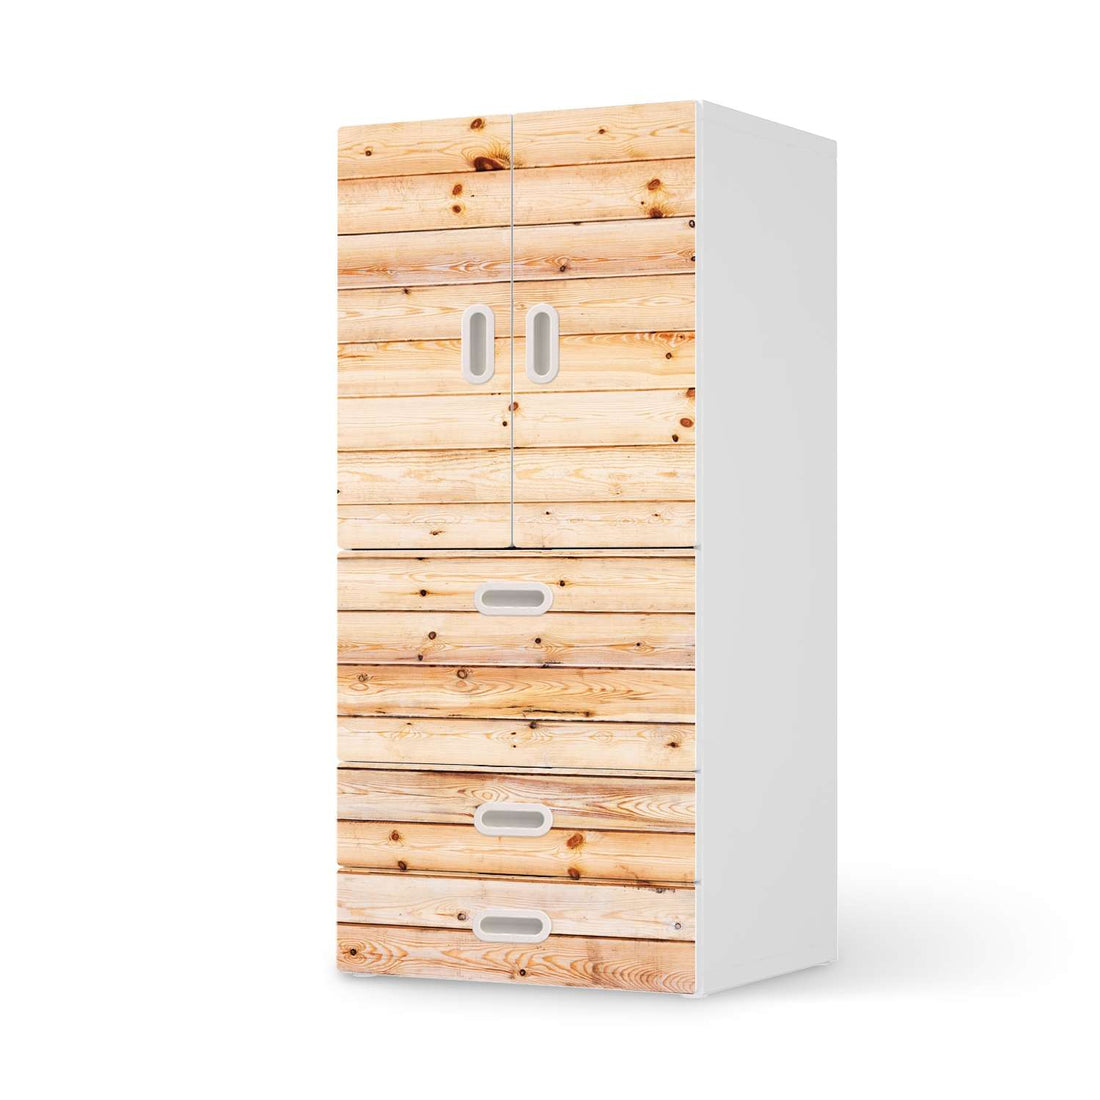 Möbelfolie Bright Planks - IKEA Stuva / Fritids kombiniert - 3 Schubladen und 2 kleine Türen  - weiss